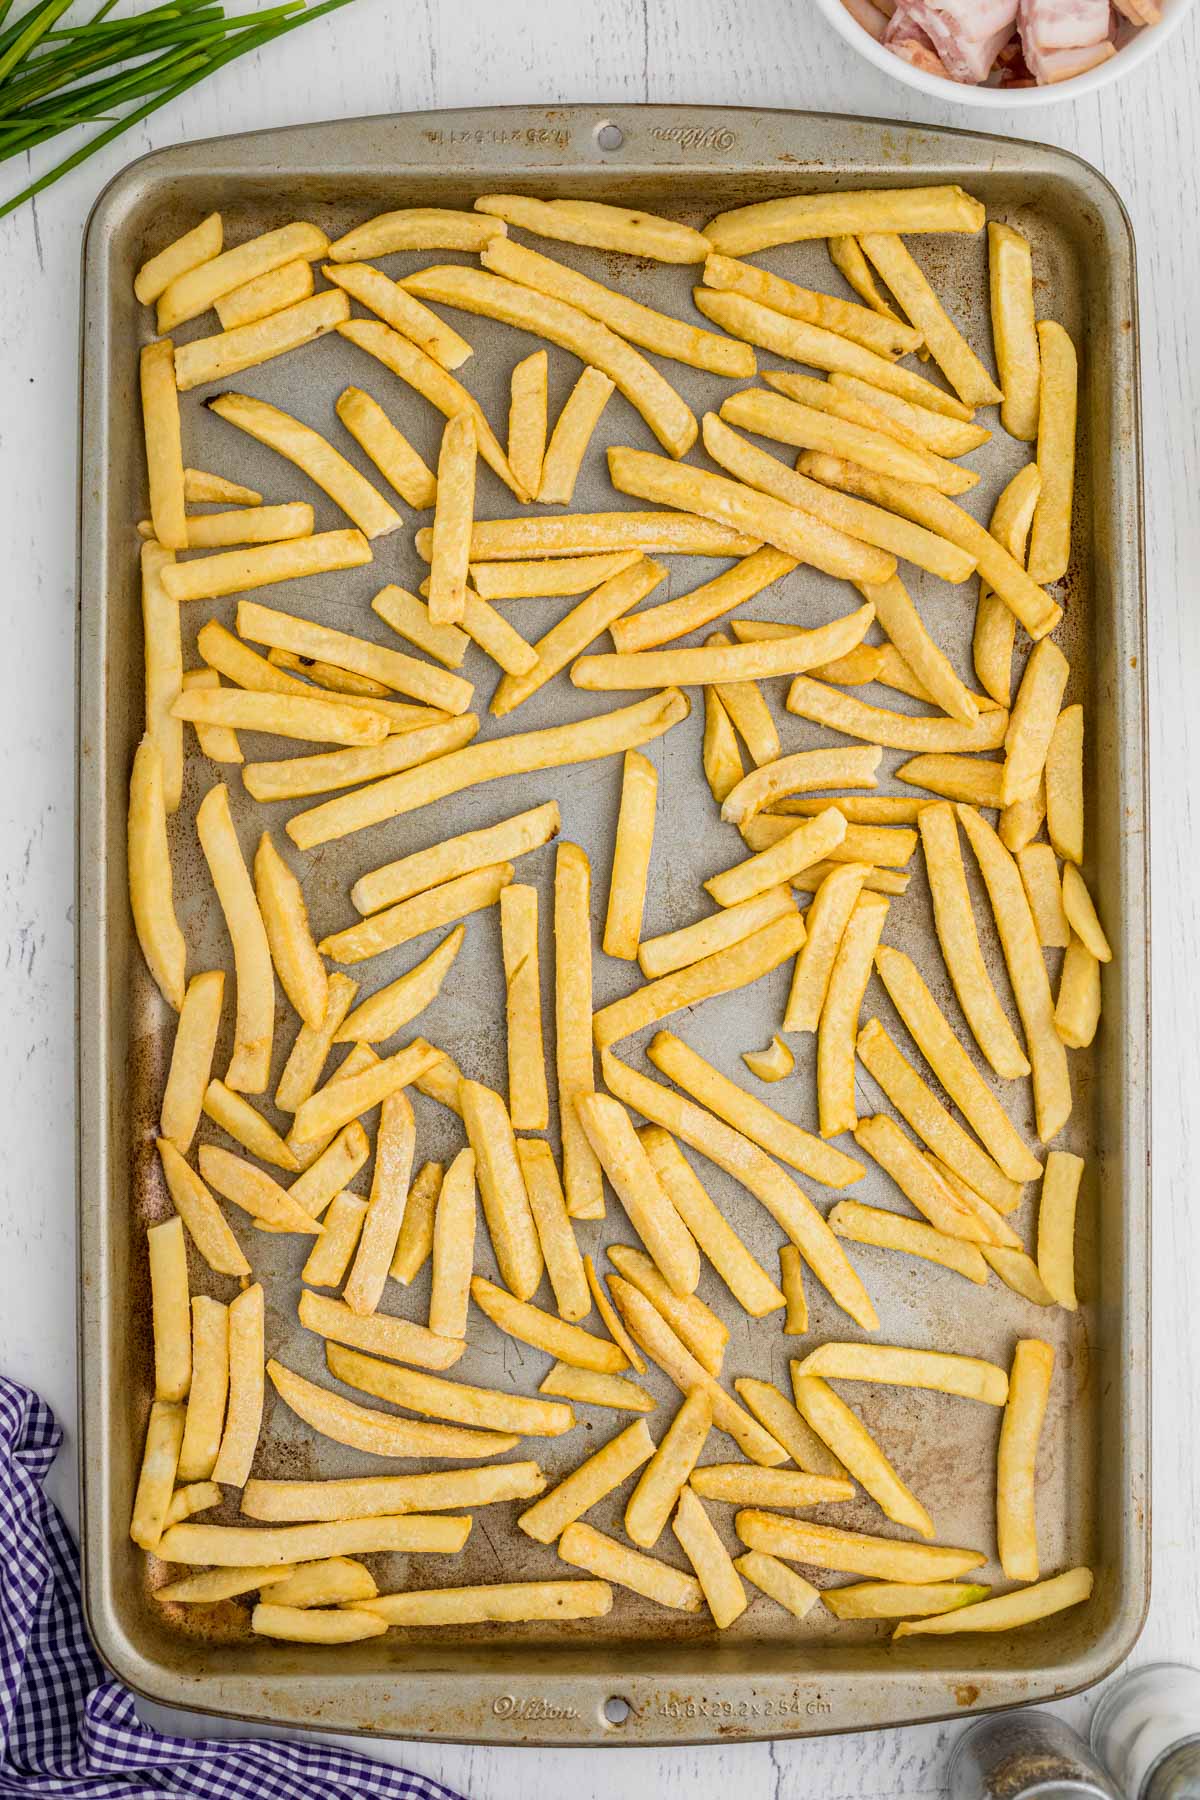 frozen fries on a baking sheet